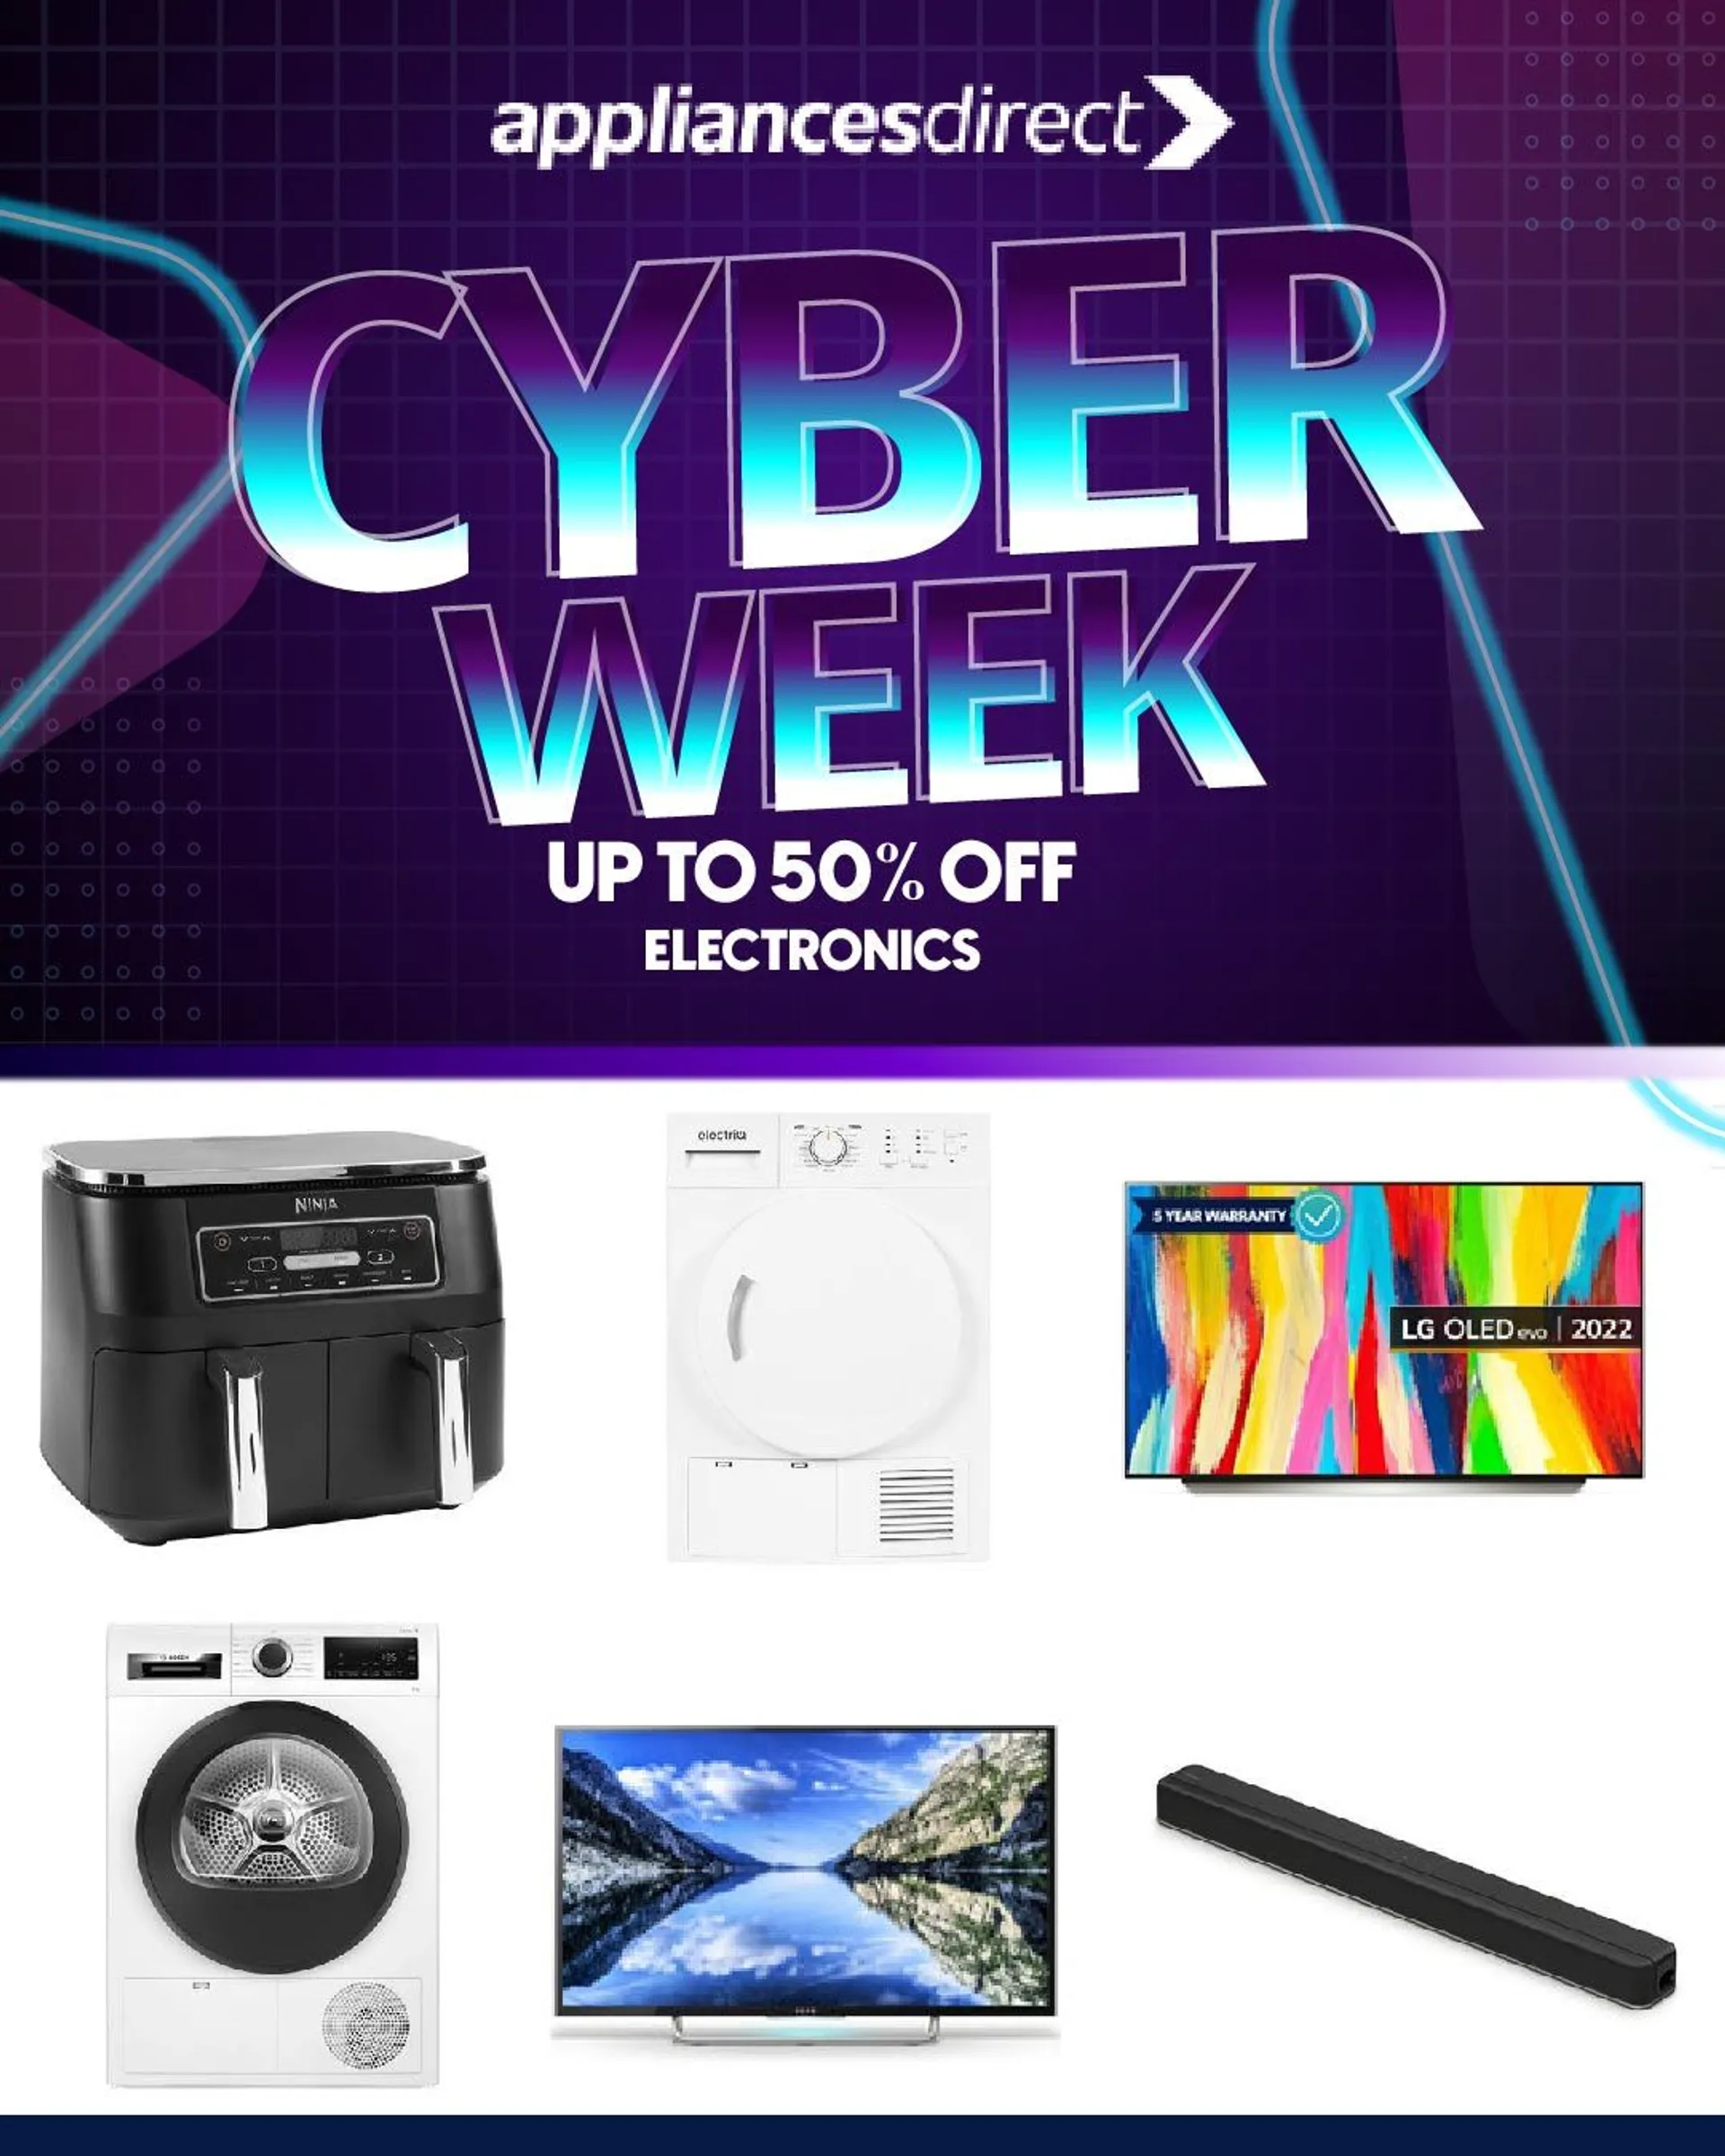 Appliances direct -  Cyber Week Offers